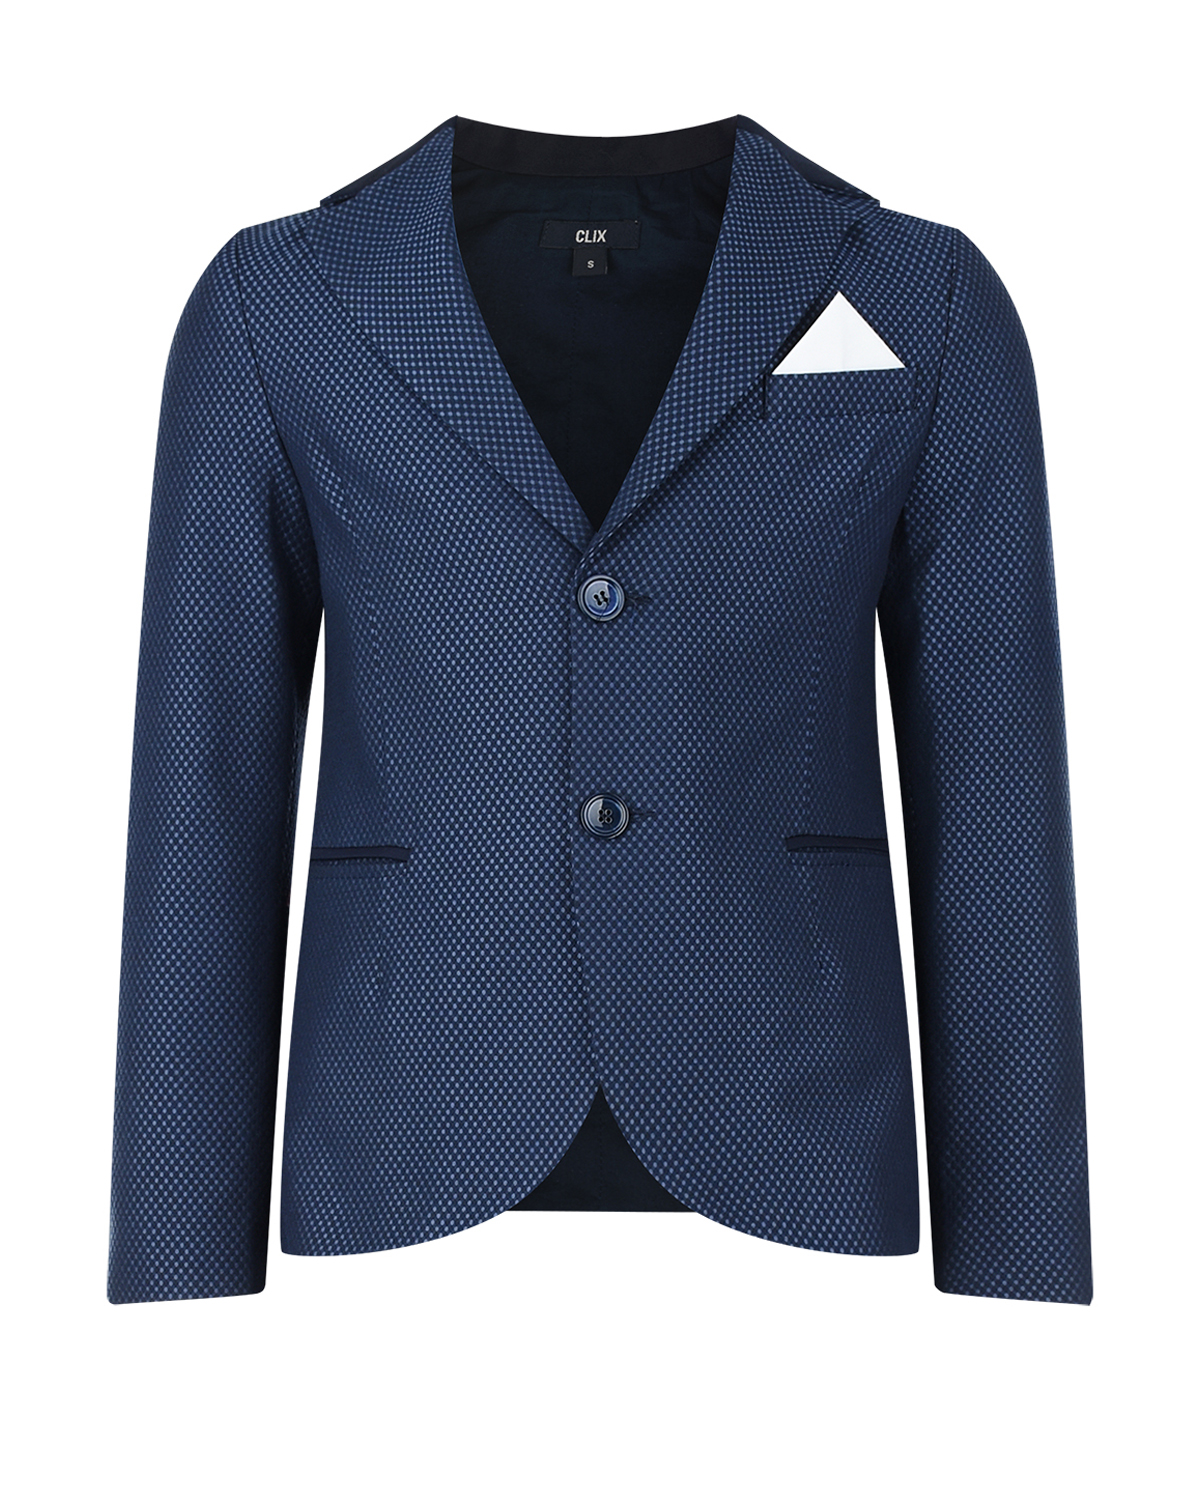 Комплект: пиджак, жилет, рубашка с бабочкой и брюки Clix детский, размер 116, цвет мультиколор - фото 4